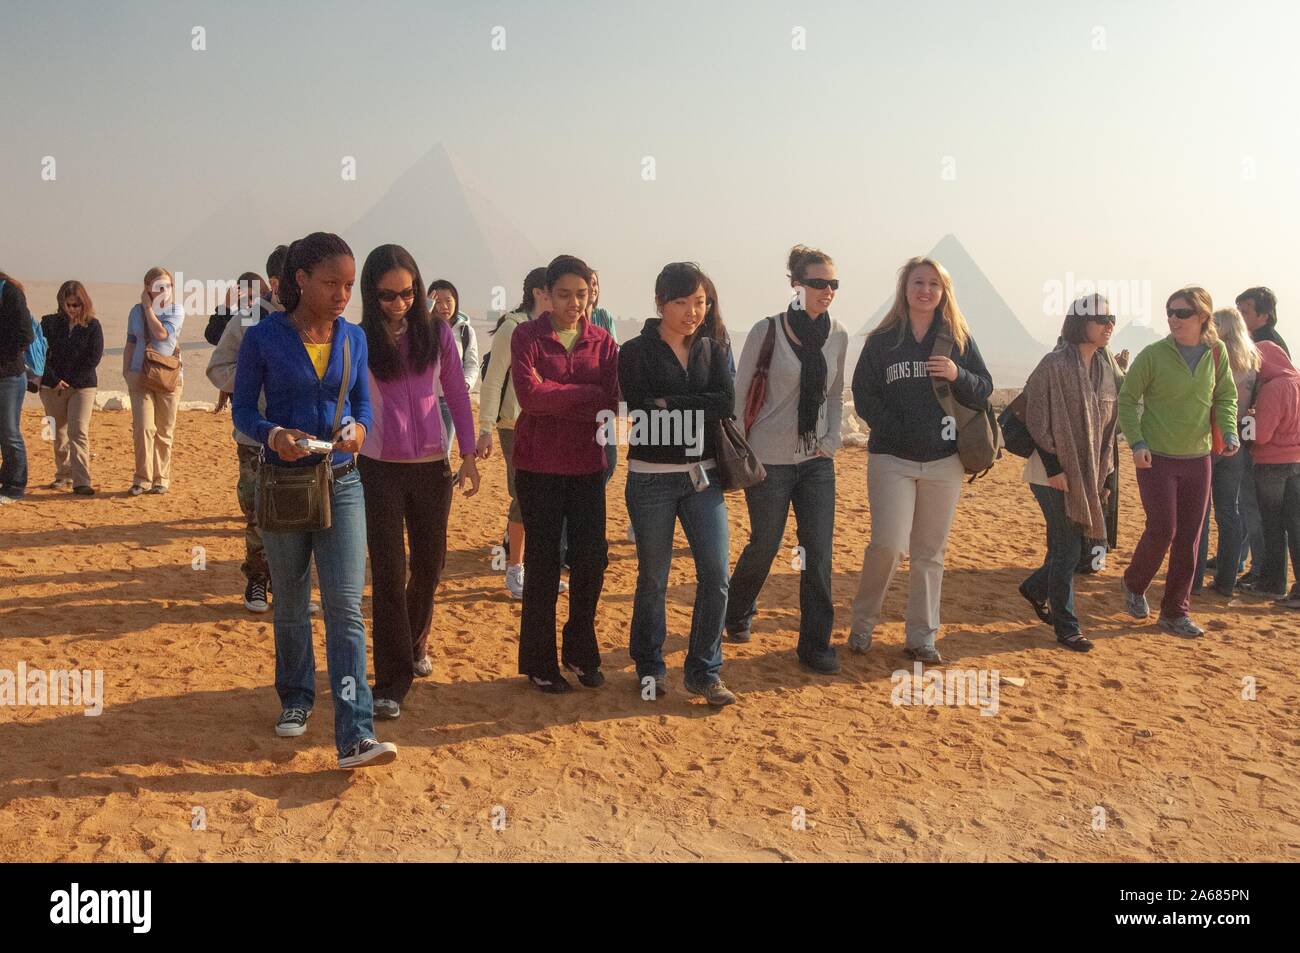 Eine Gruppe von der Johns Hopkins University Studenten, außerhalb an einem sonnigen Tag, zu Fuß in Richtung der Kamera mit mehreren Pyramiden sichtbar in der Ferne, Giza, Ägypten während einer Studie im Ausland, 7. Januar 2008. Vom Homewood Sammlung Fotografie. () Stockfoto